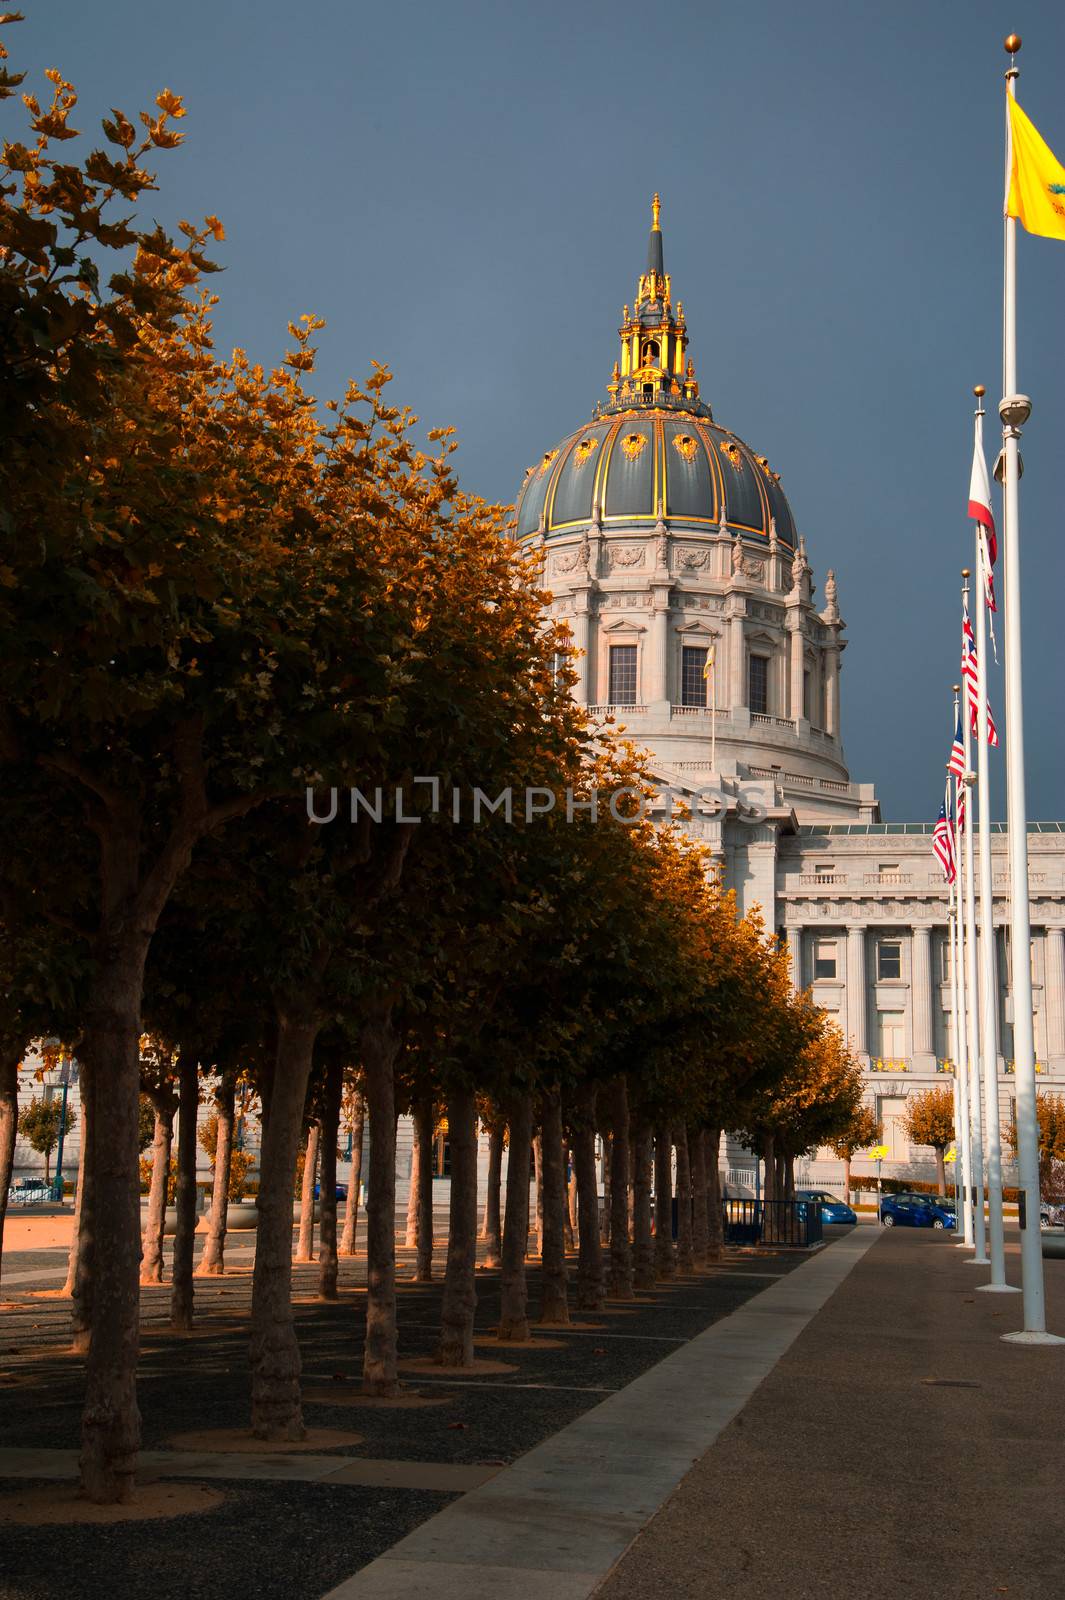 San Francisco City Hall by CelsoDiniz